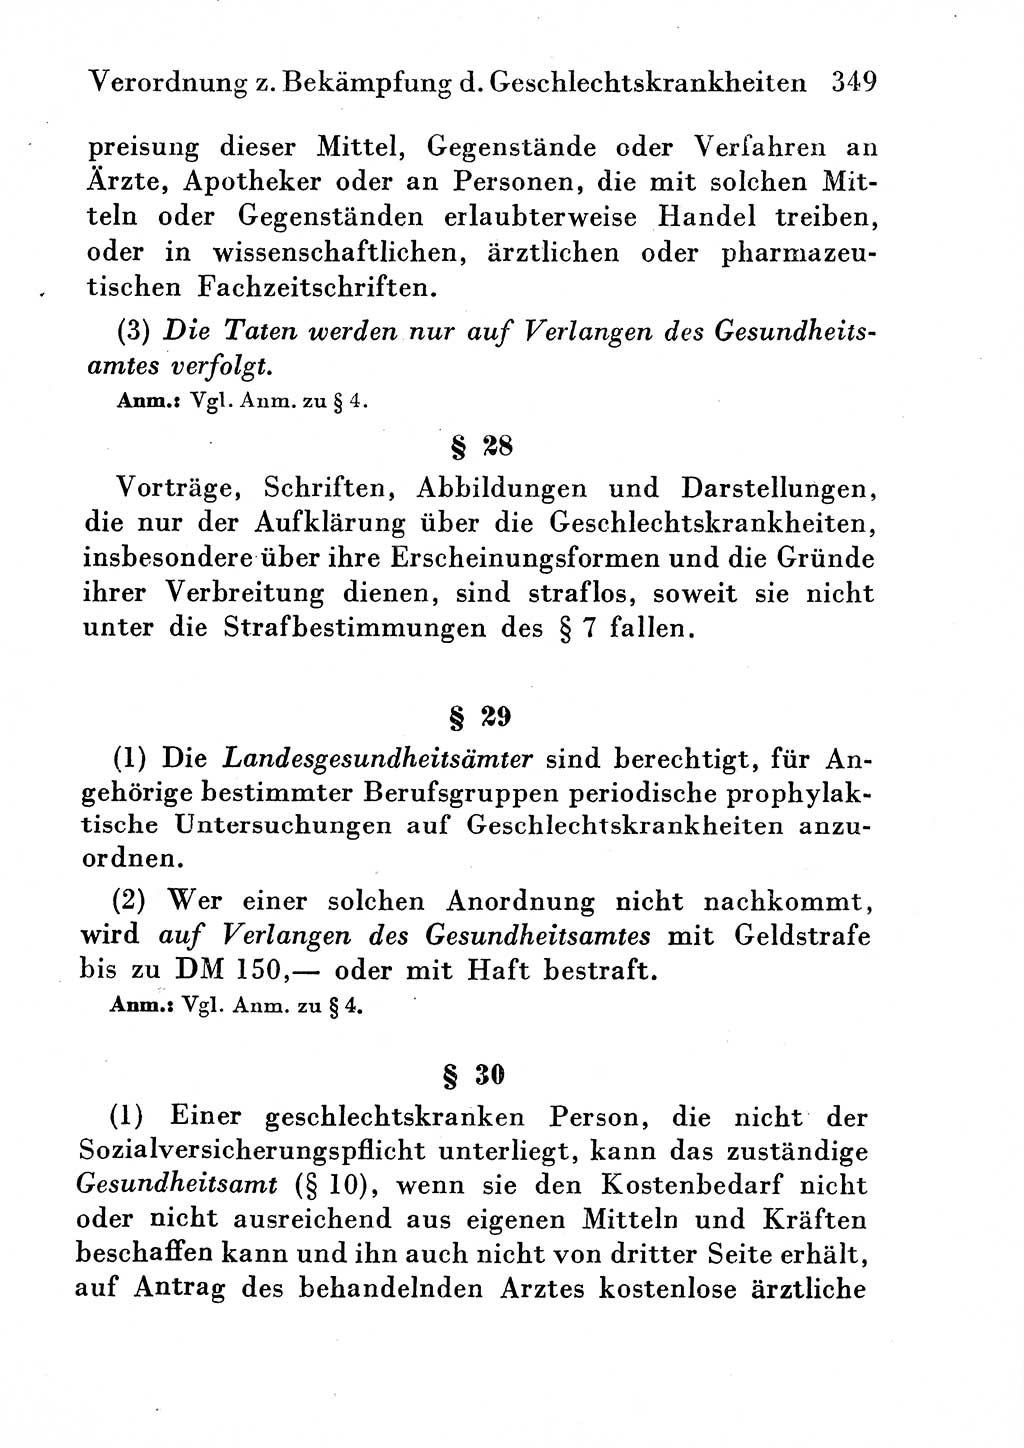 Strafgesetzbuch (StGB) und andere Strafgesetze [Deutsche Demokratische Republik (DDR)] 1954, Seite 349 (StGB Strafges. DDR 1954, S. 349)